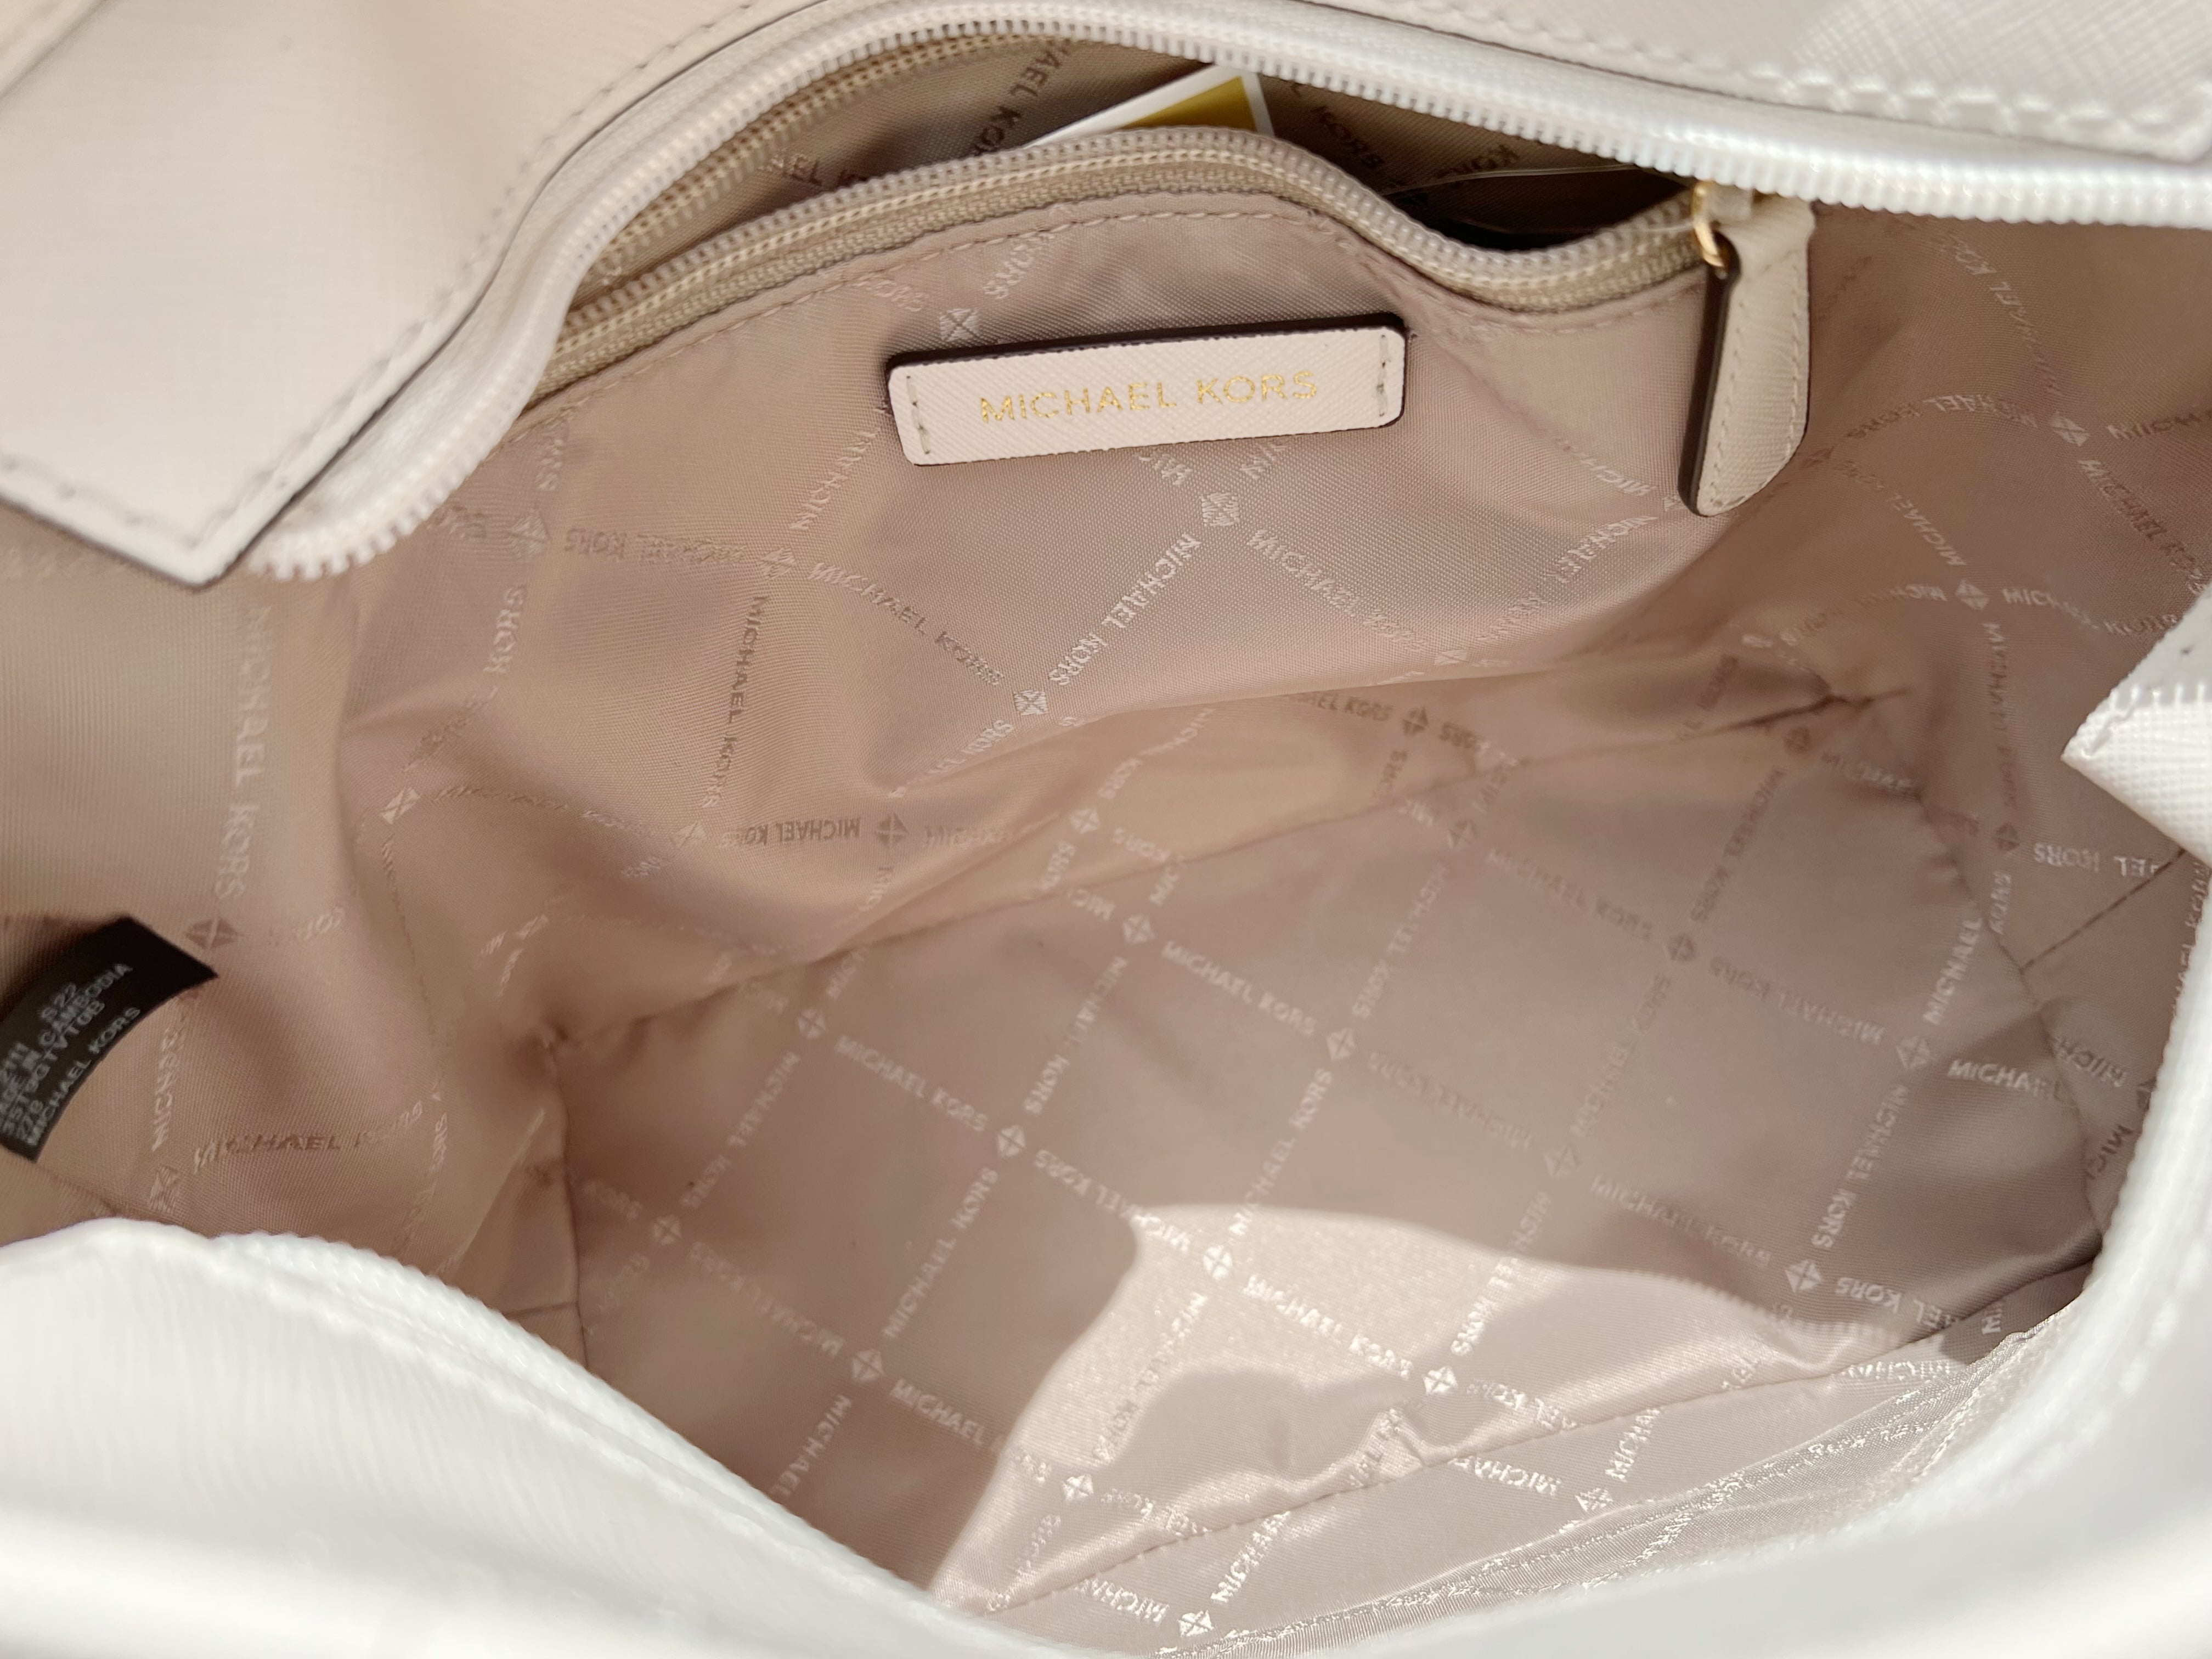 Michael Kors Jet Set Travel Extra-Small Logo Top-Zip Tote Bag – shopmixusa